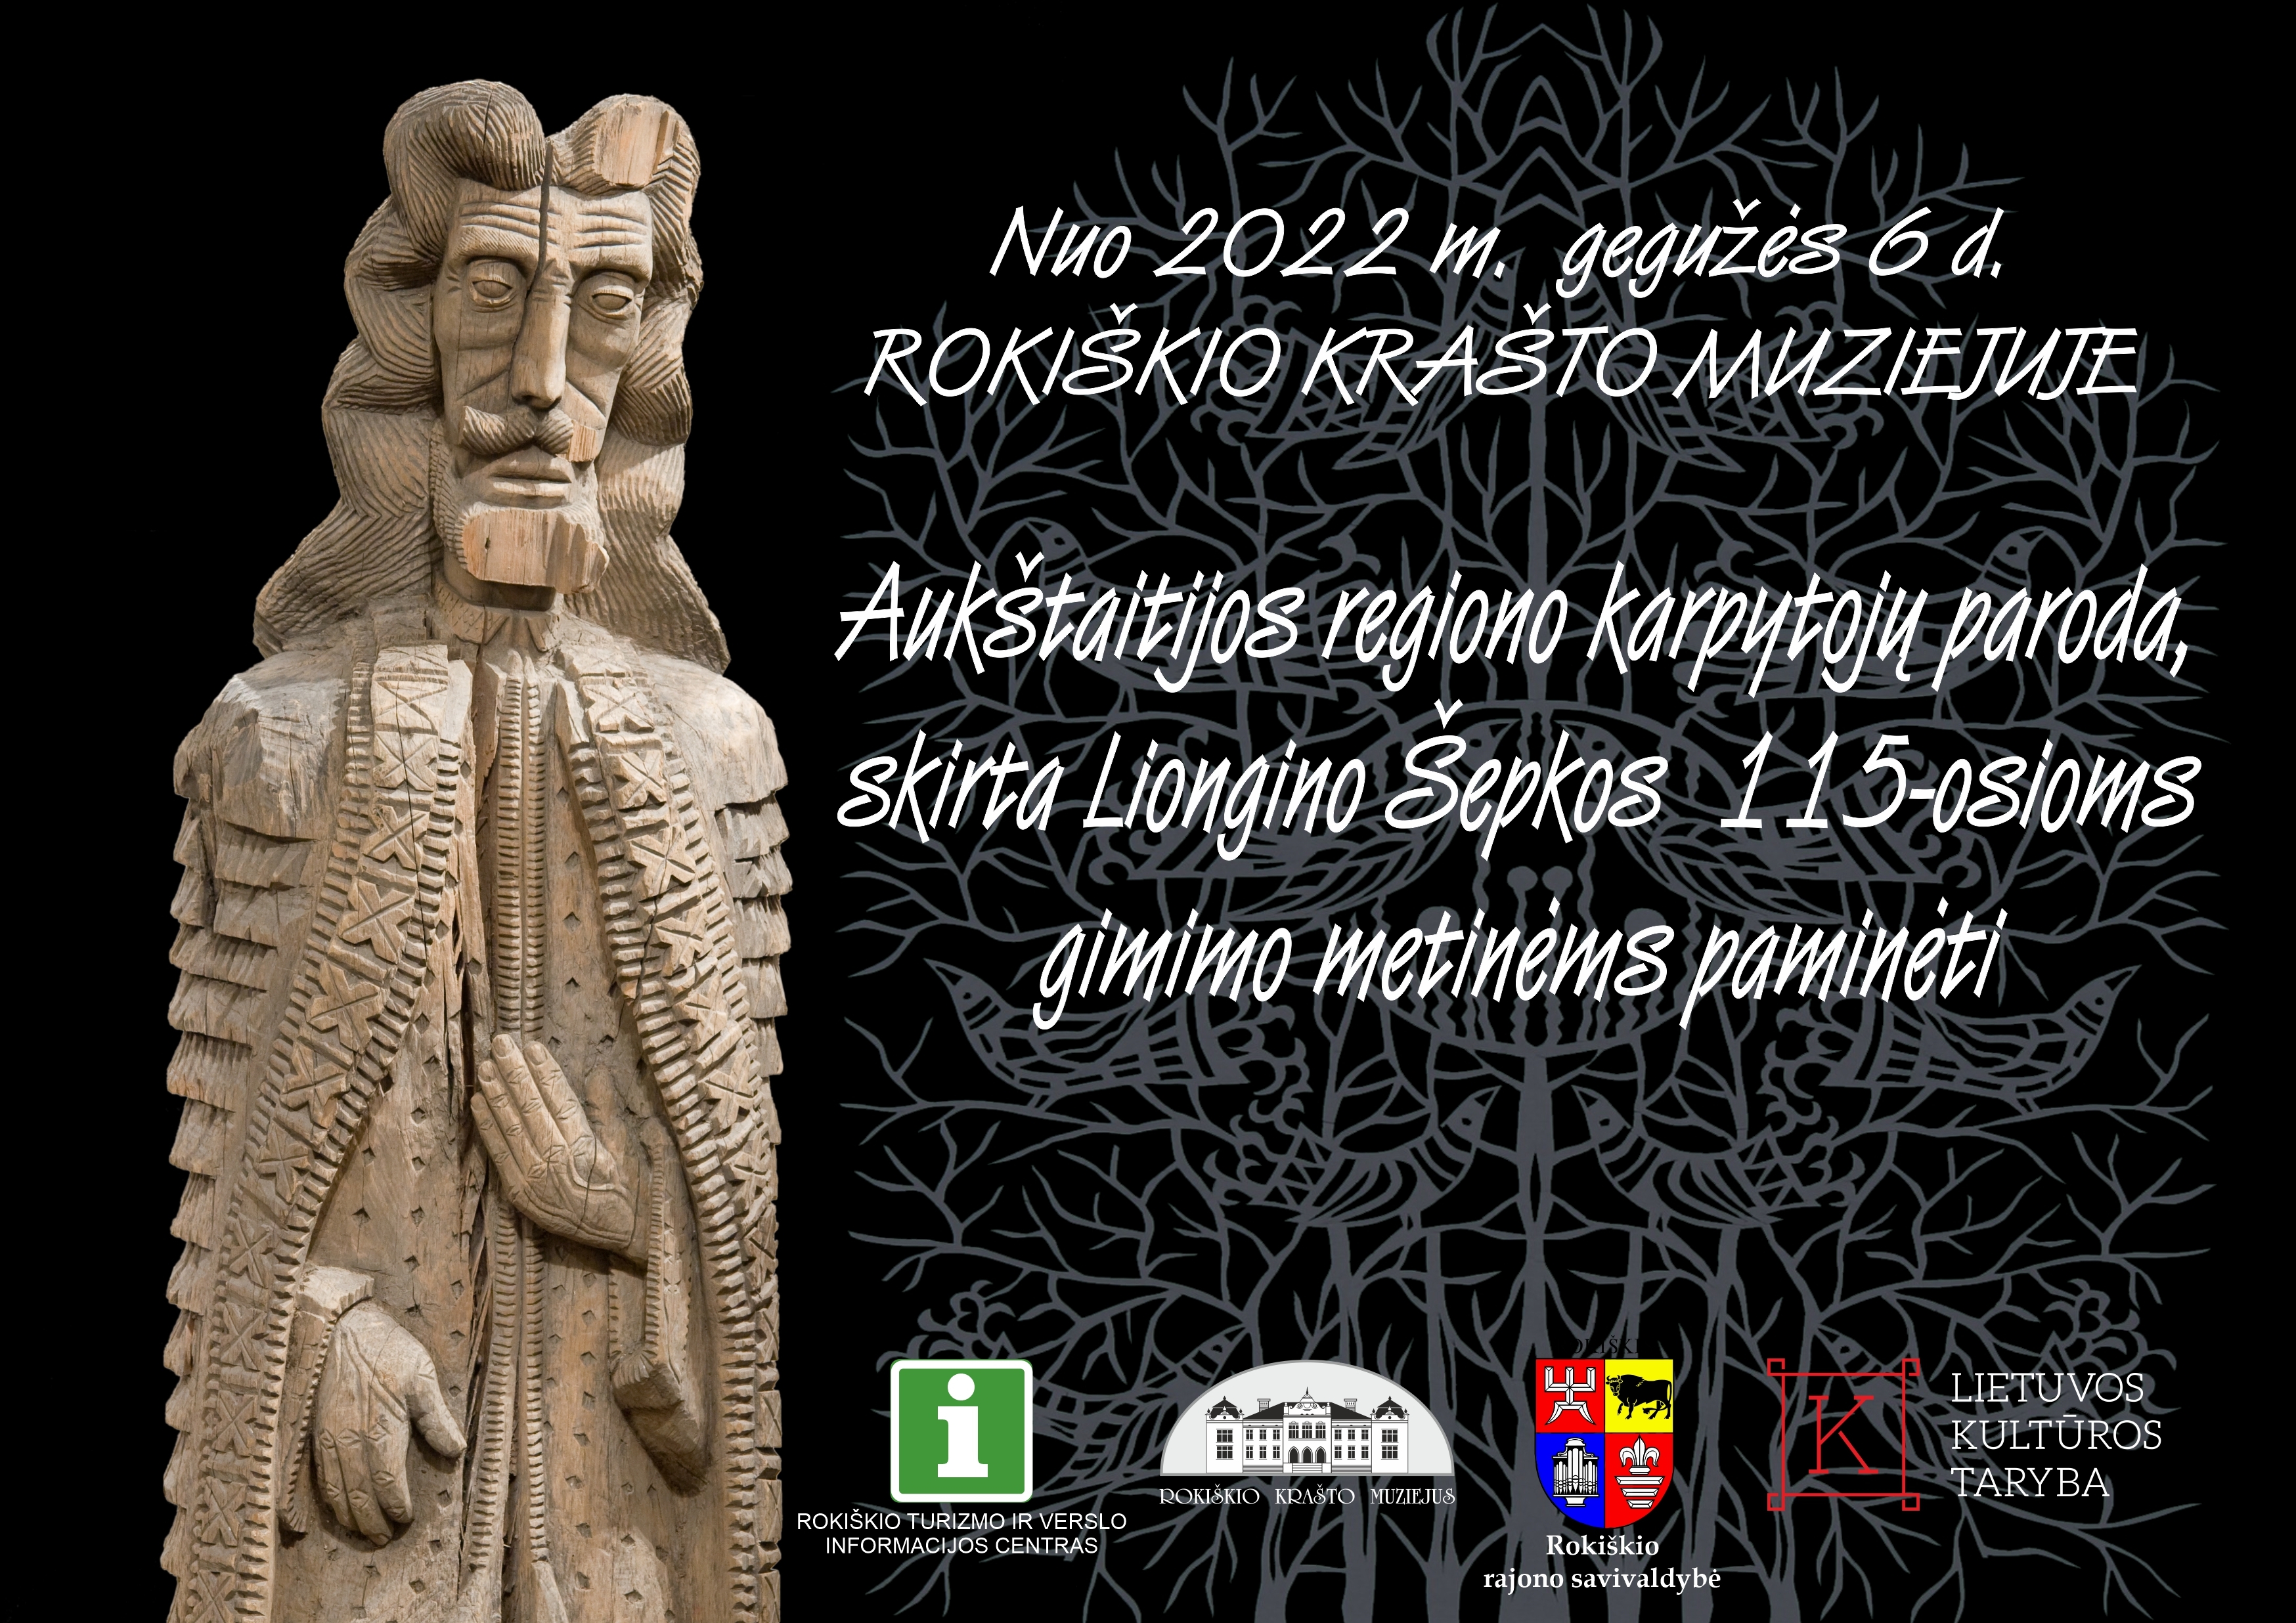 Aukštaitijos regiono karpinių paroda Rokiškio krašto muziejuje